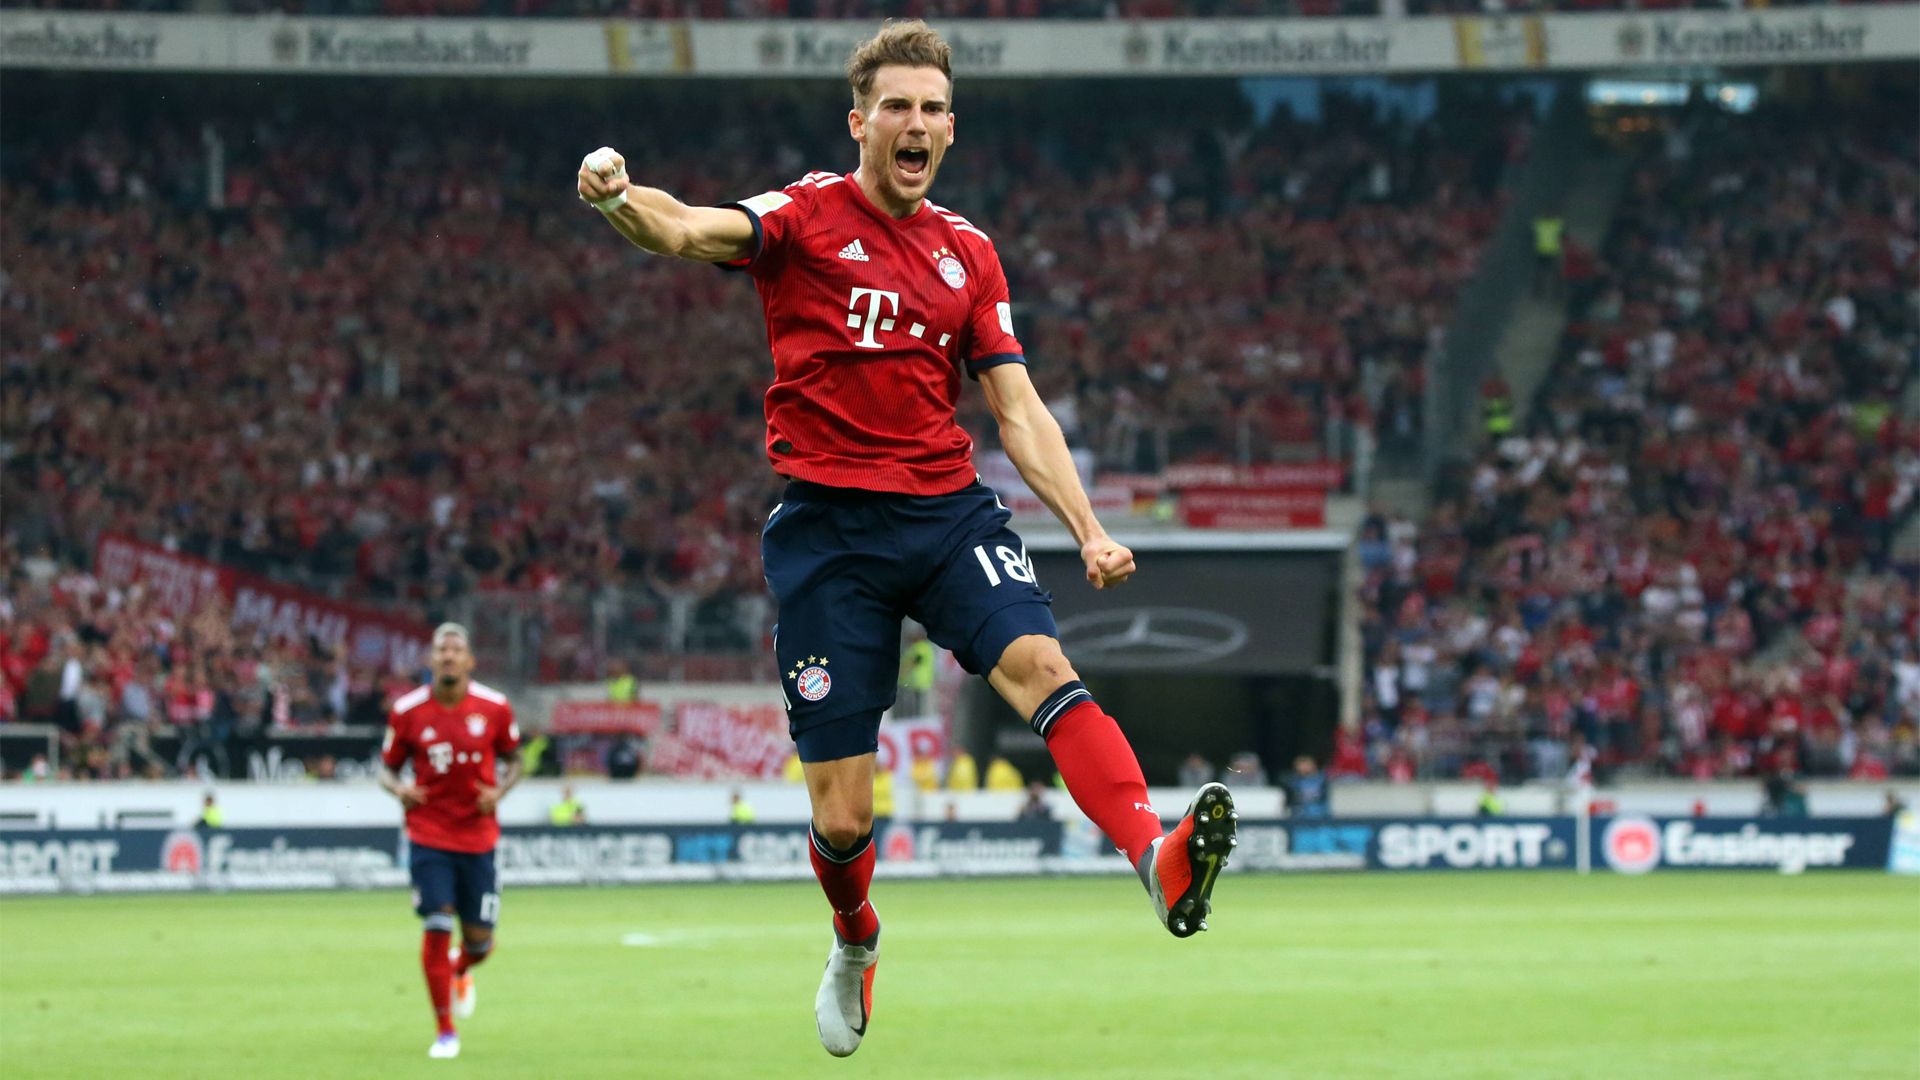 Leon Goretzka is just what Bayern Munich needed